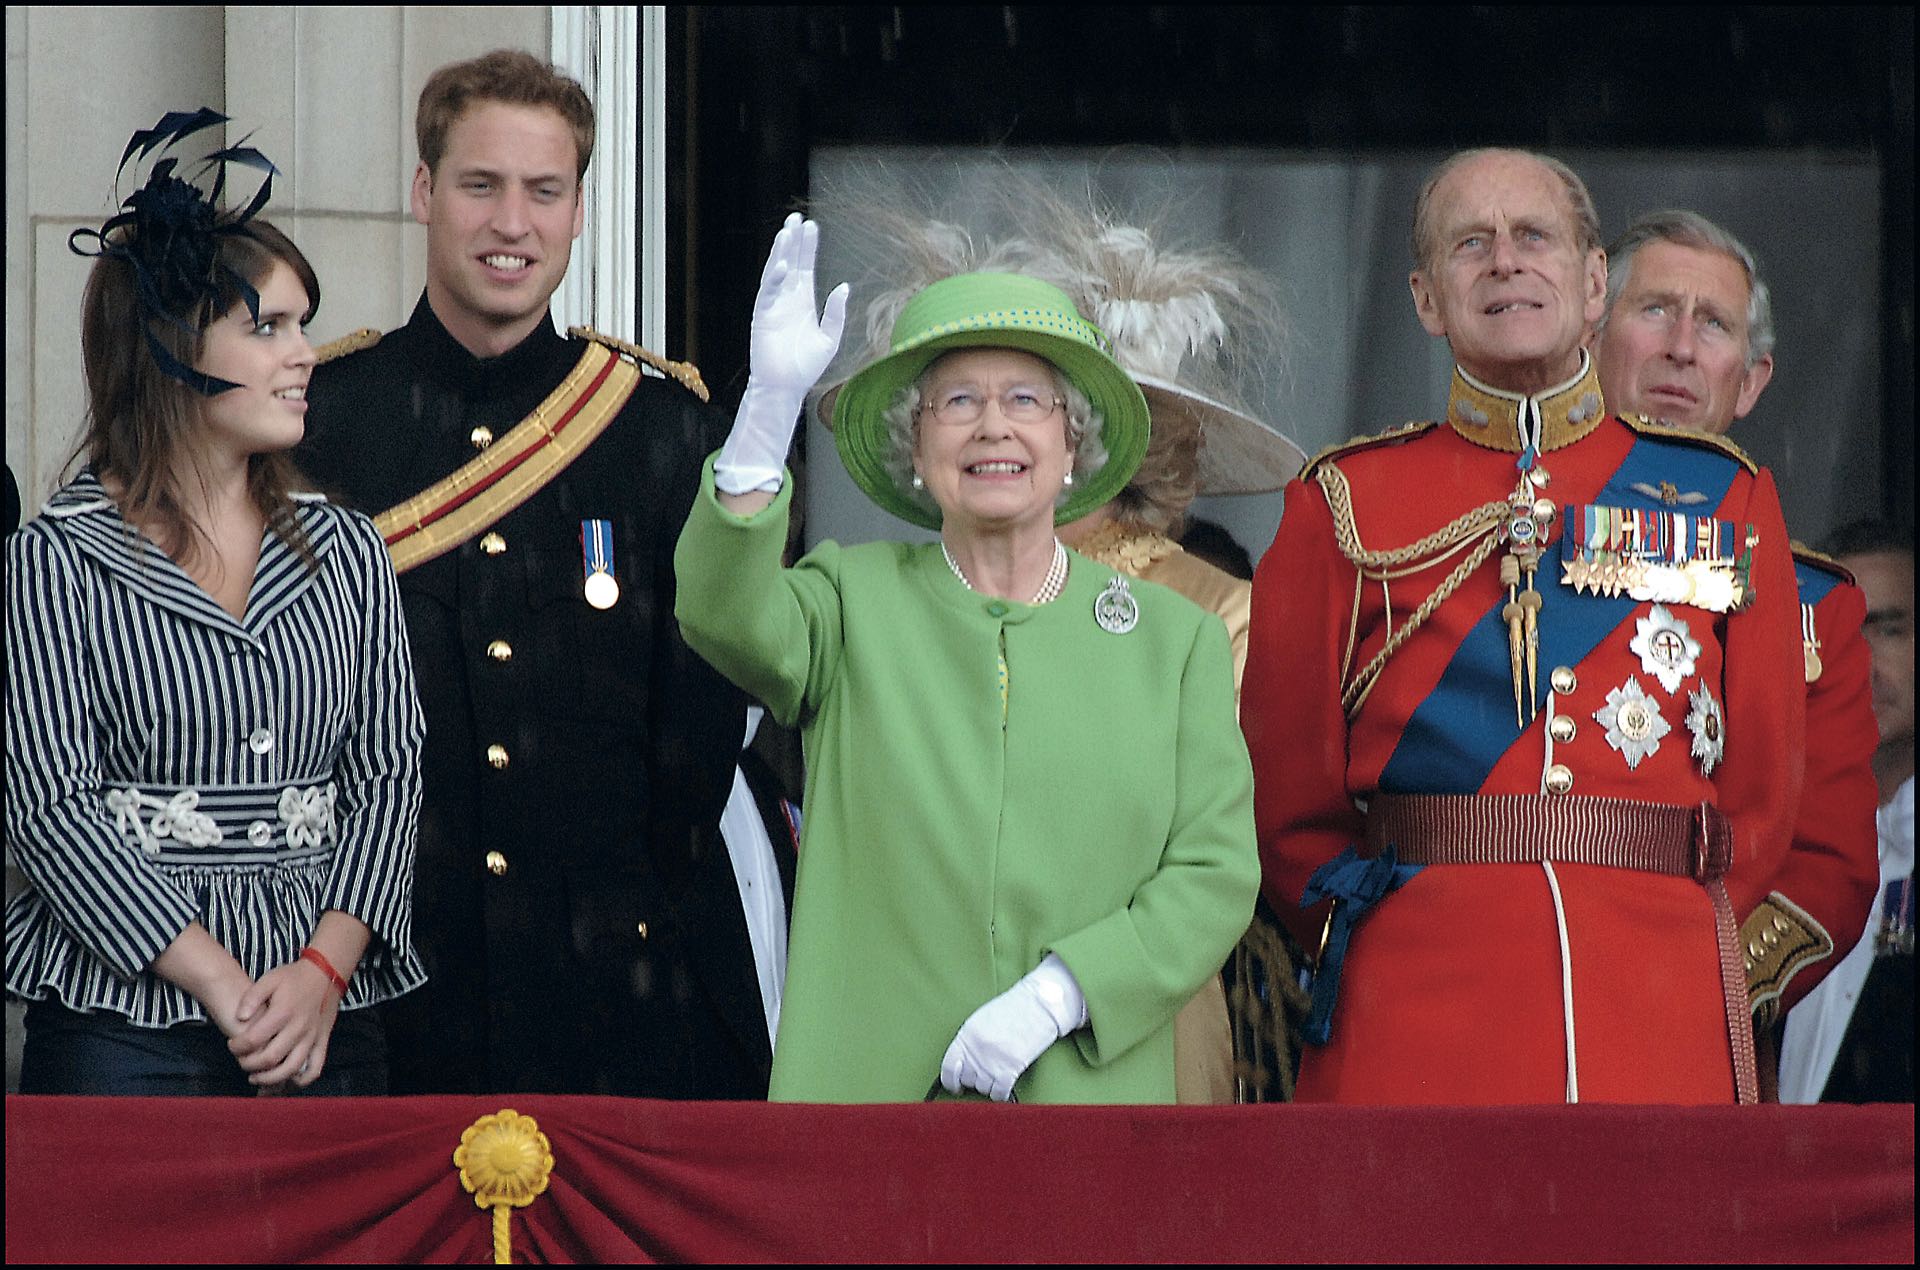 Felipe de Edimburgo, príncipe consorte del Reino Unido junto a la reina Isabel II. El año pasado Felipe se retiró de la vida pública. Tuvieron cuatro hijos: Carlos, Ana, Andrés y Eduardo.